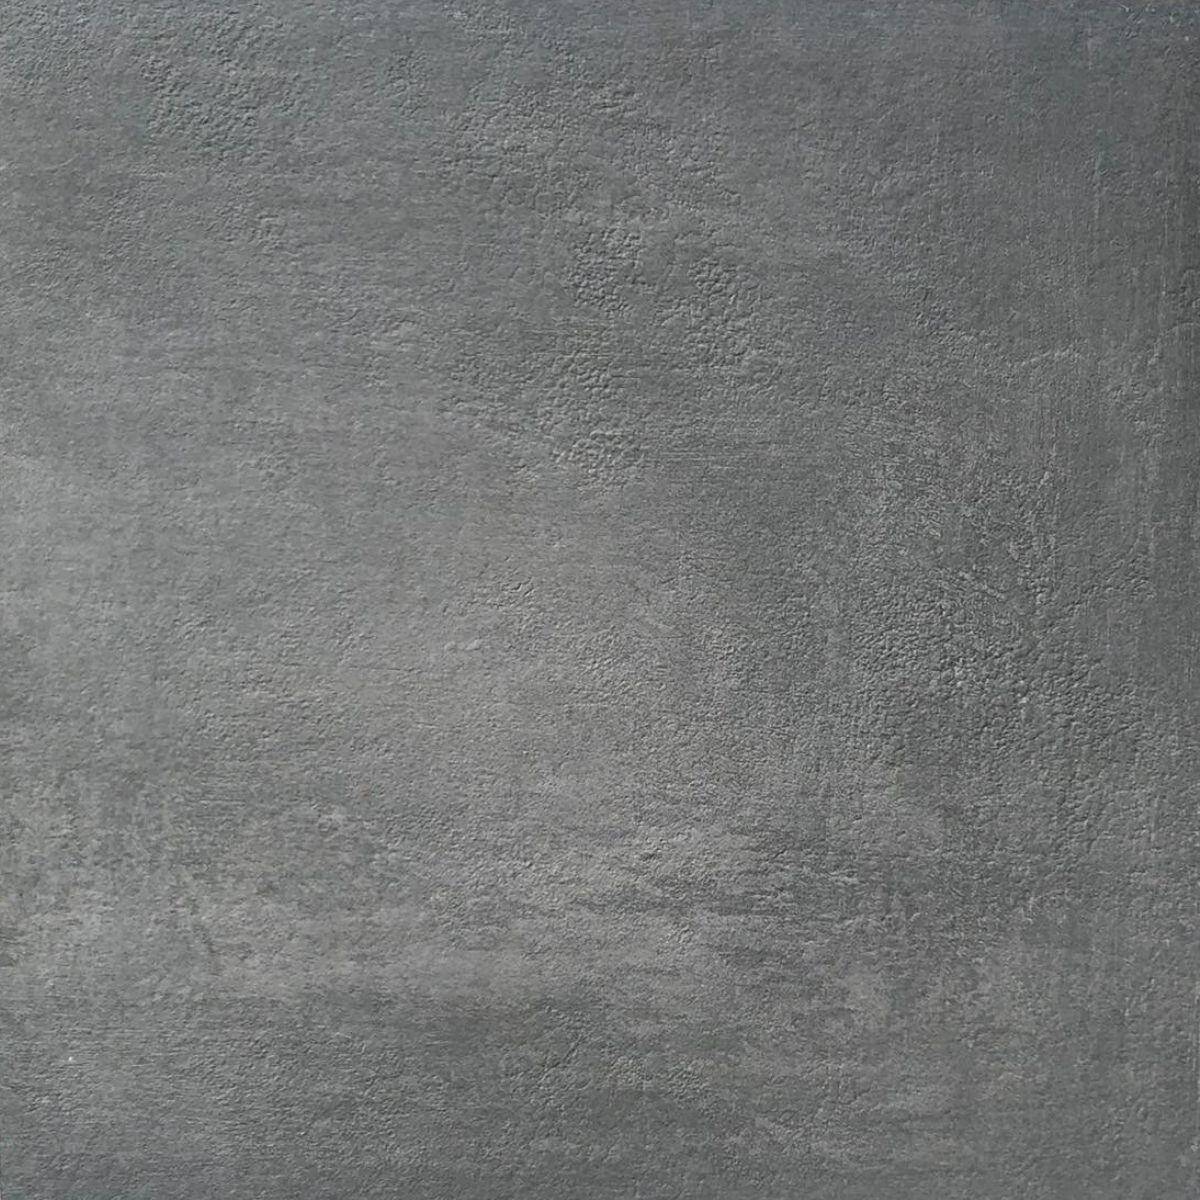 Płyta tarasaowa UPHIL grey 341 60x60x 2 cm 